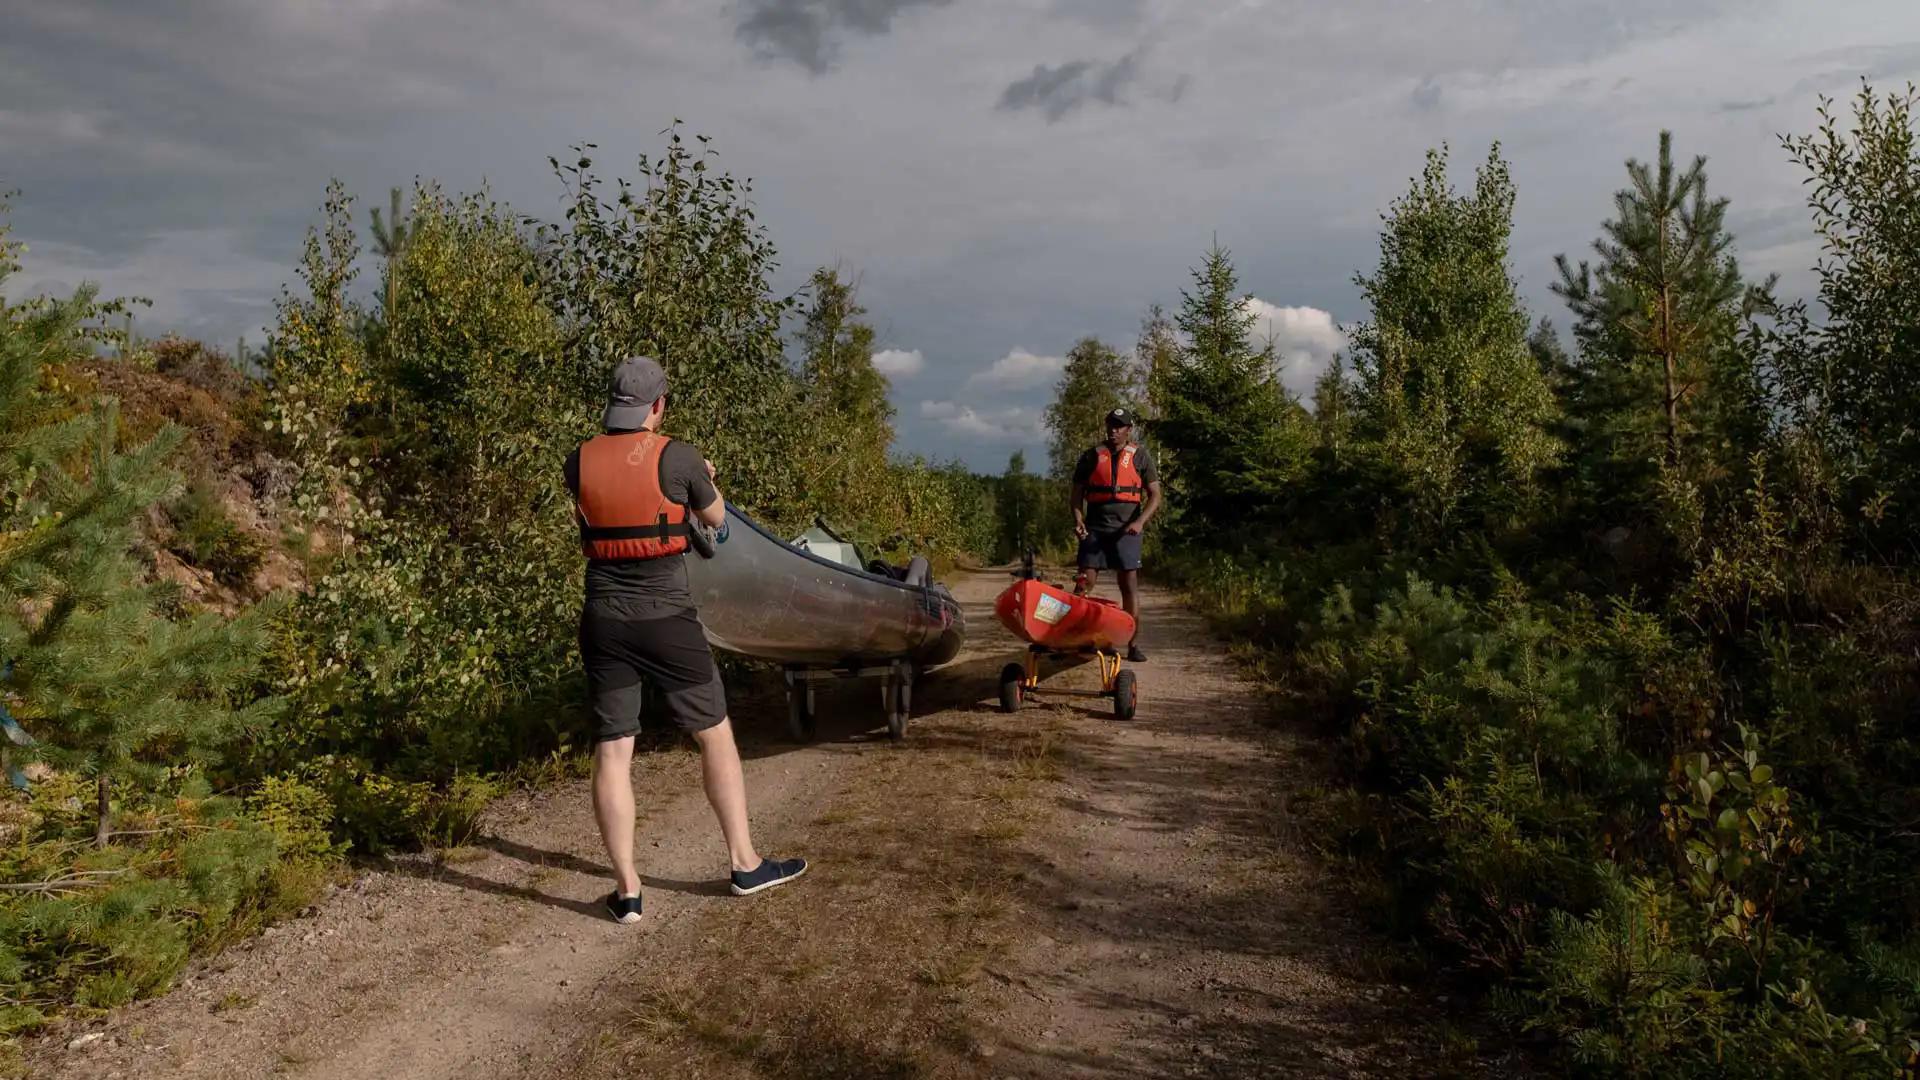 Canoe trip en Suède